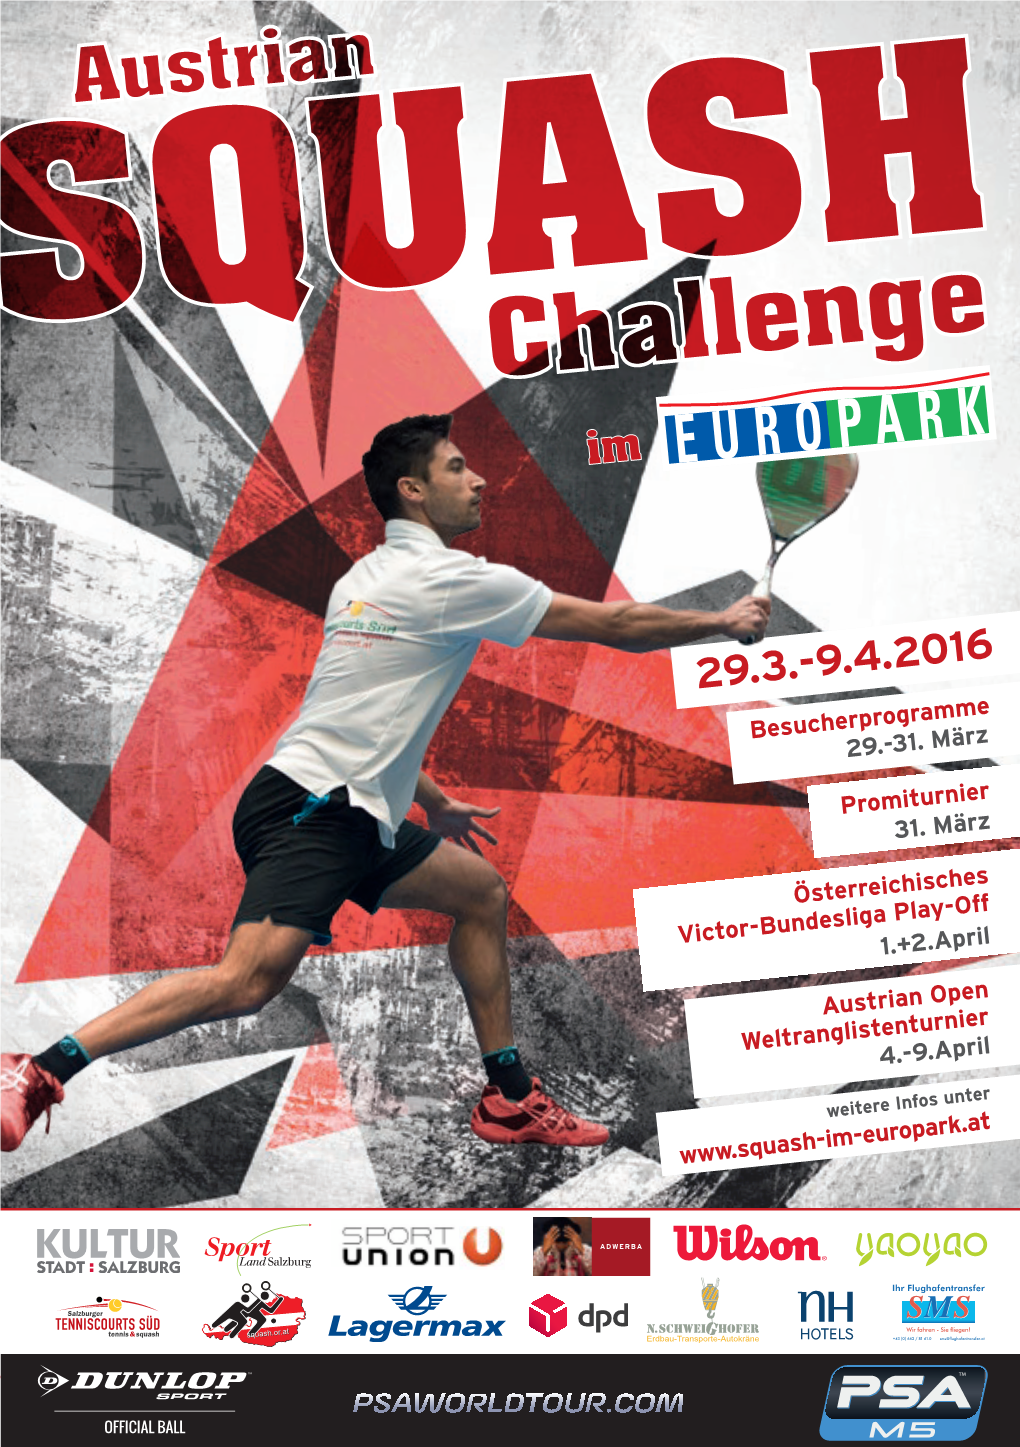 Austrian Squash Challenge Seite 06 Den Zuschauern Eine Herrliche Möglichkeit Die Dynamik Des Squash- Sportes Zu Erleben